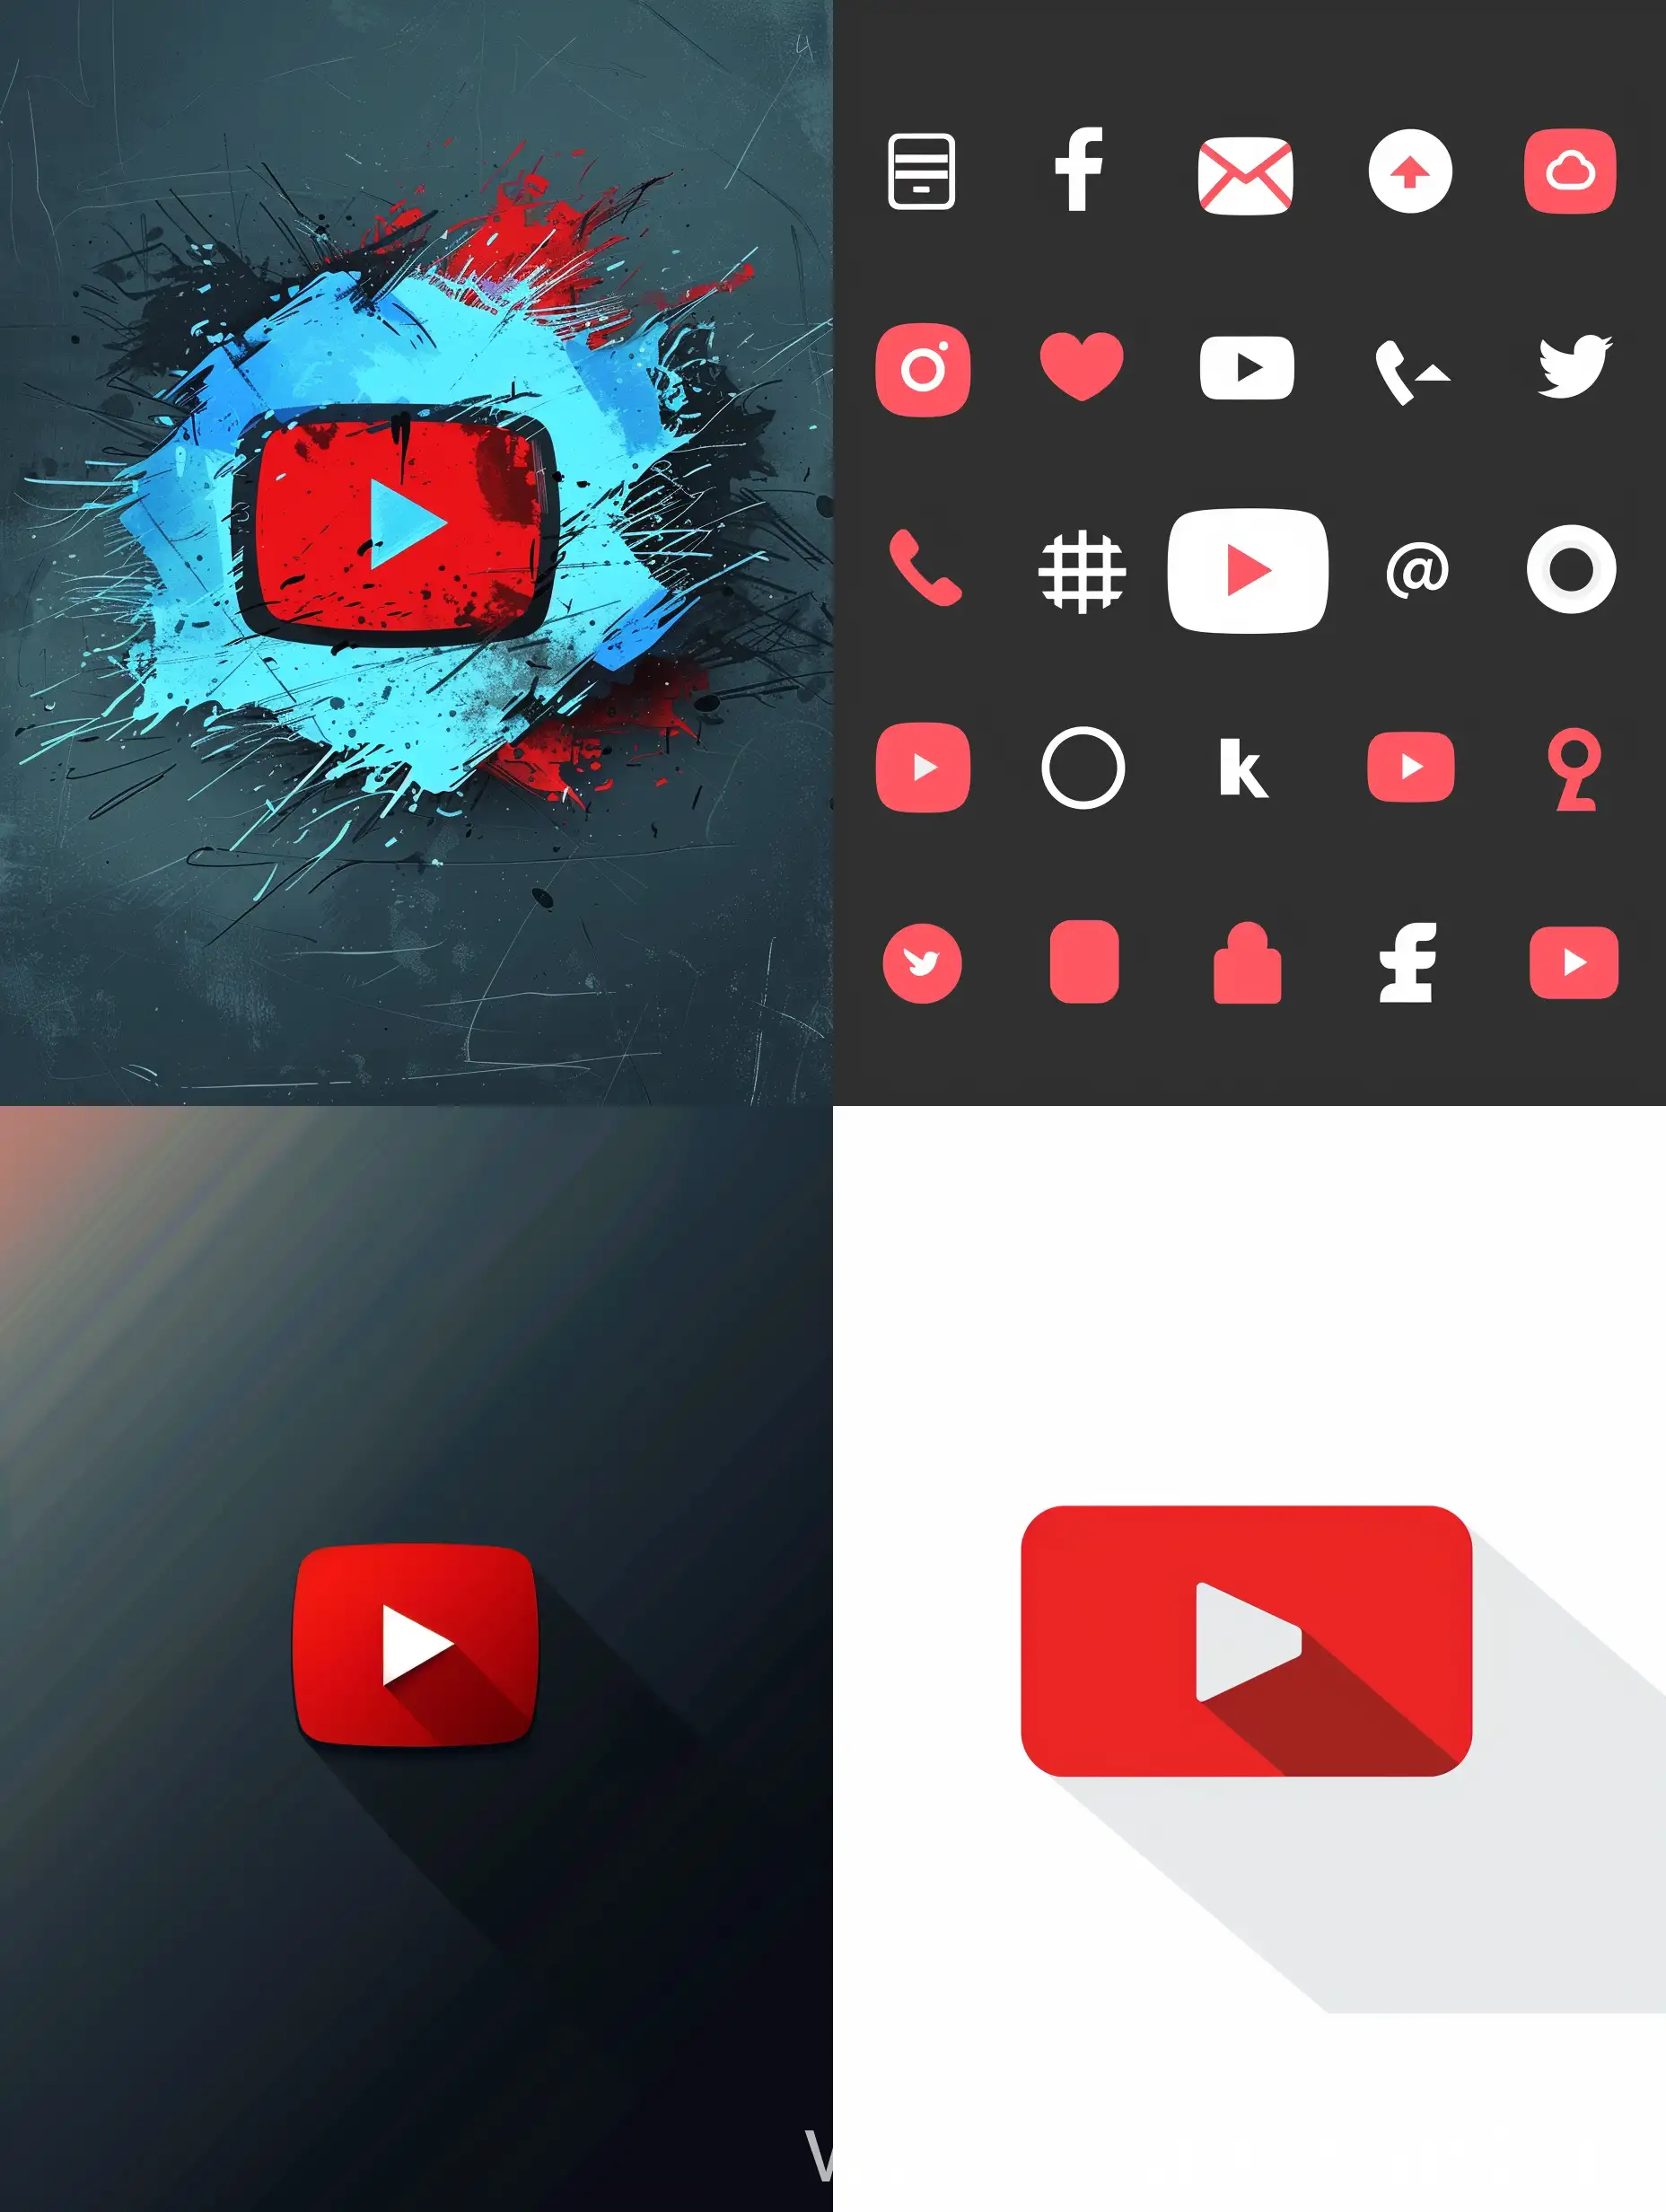 Professional-YouTube-Logo-Design-with-Symbols-v6-AR-34-No-49247